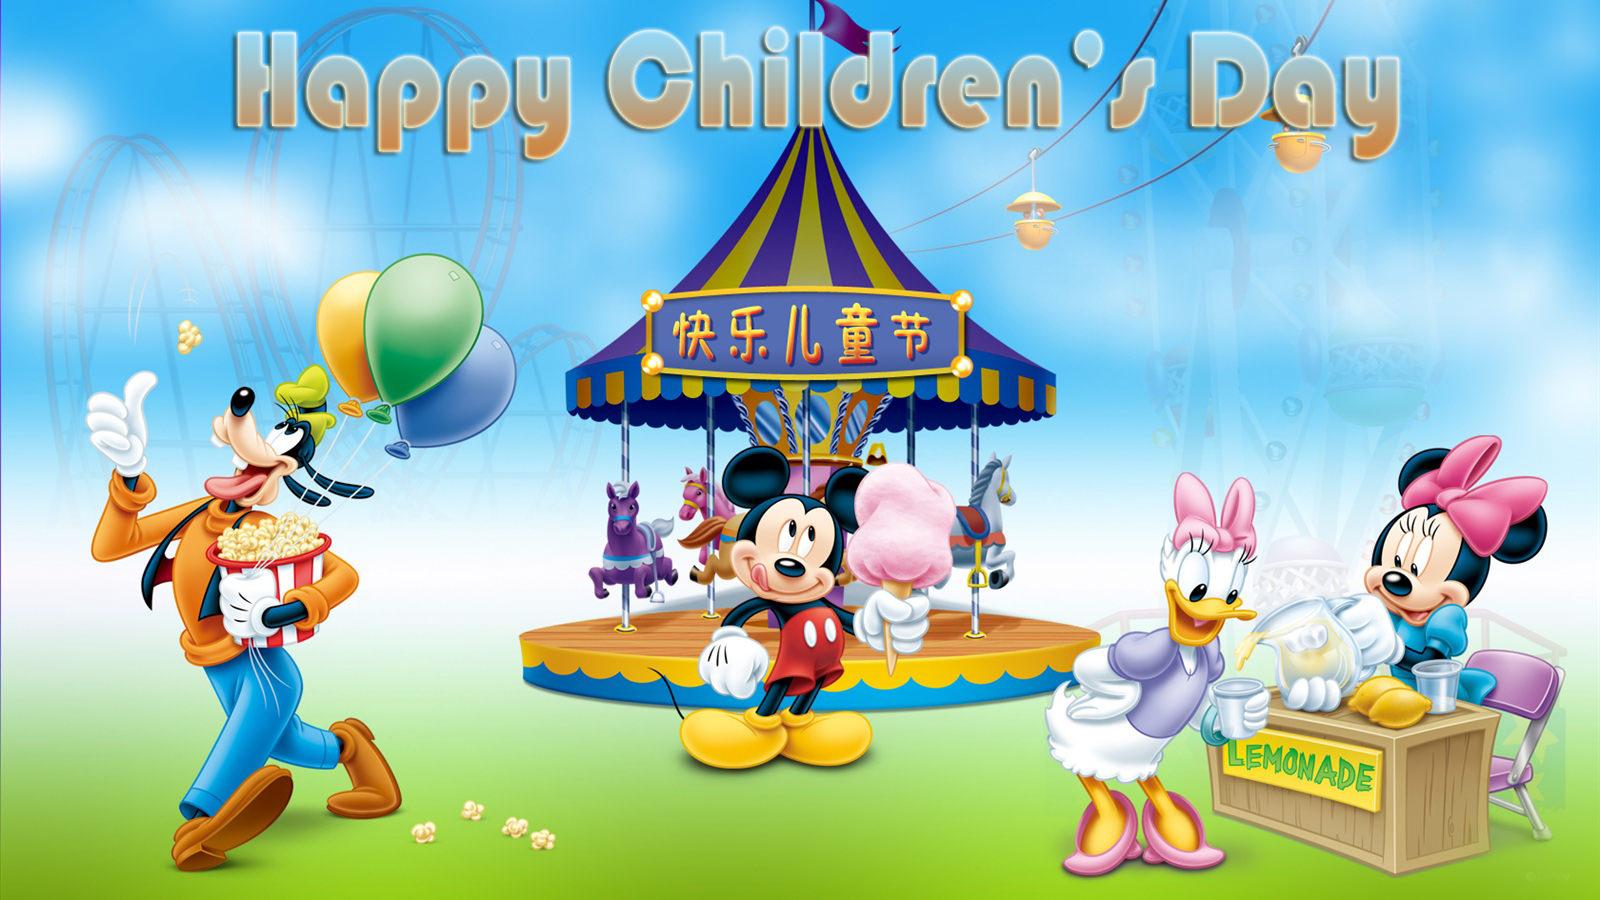 Disney Celebrating Childrens Day